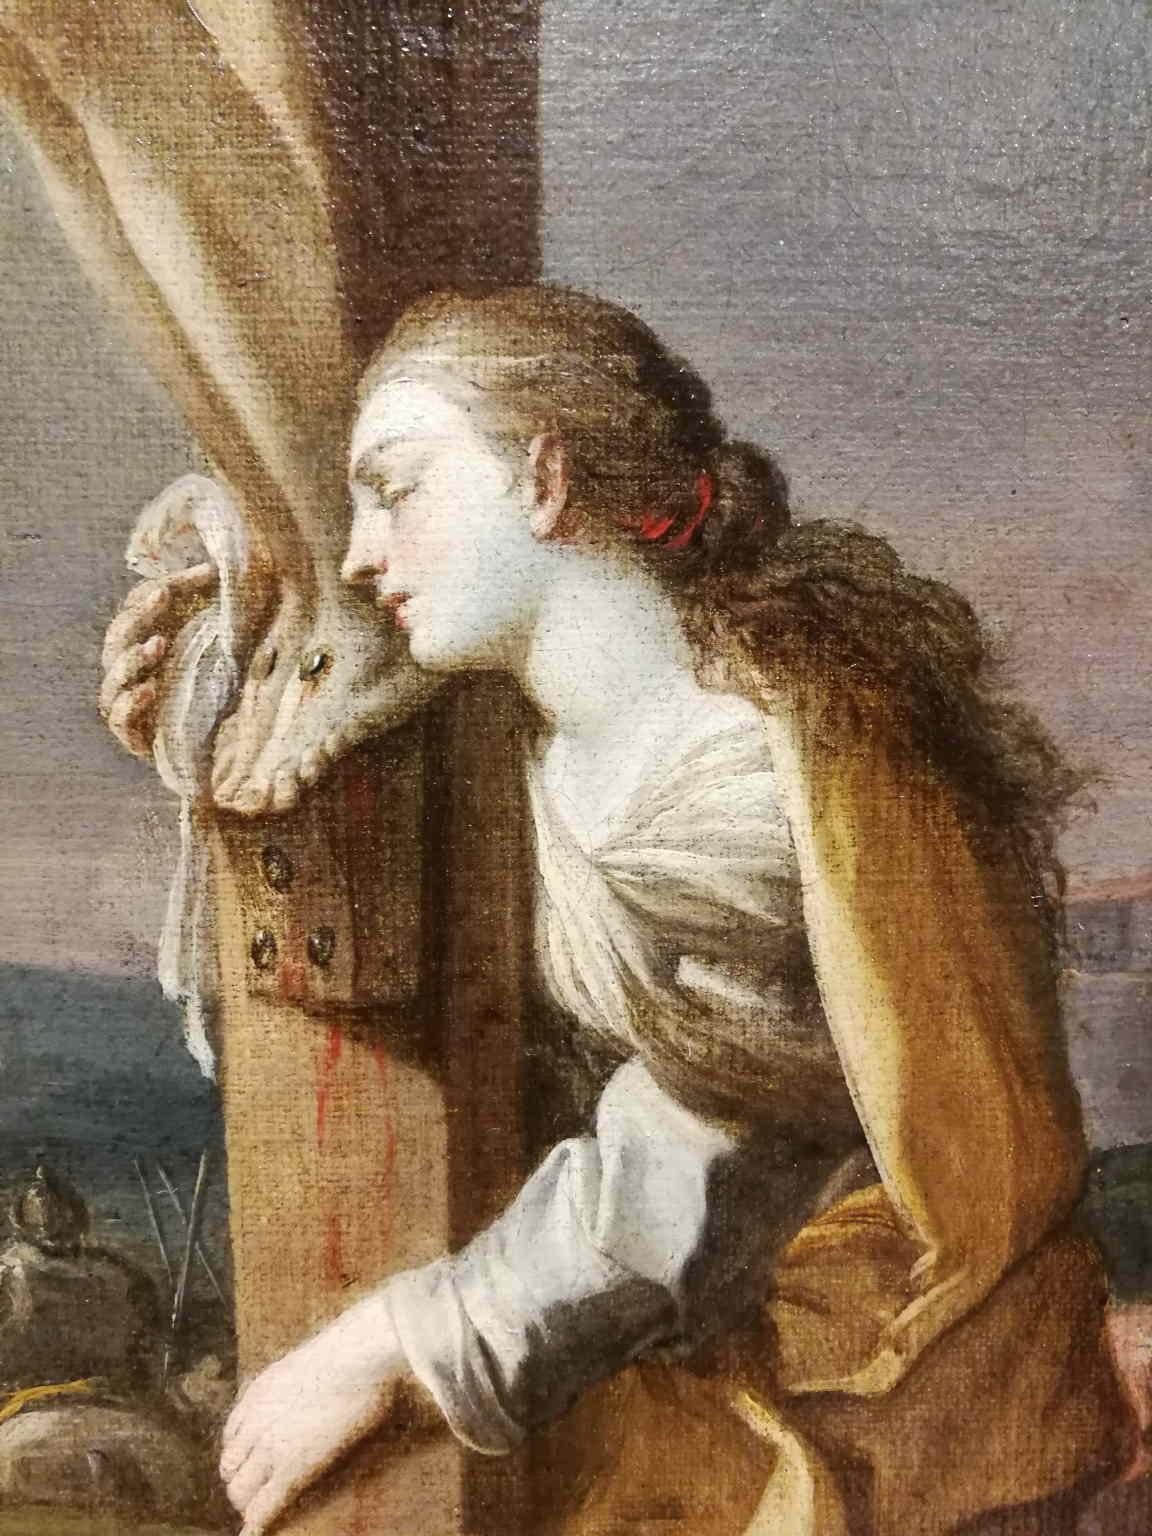 18th century religious paintings